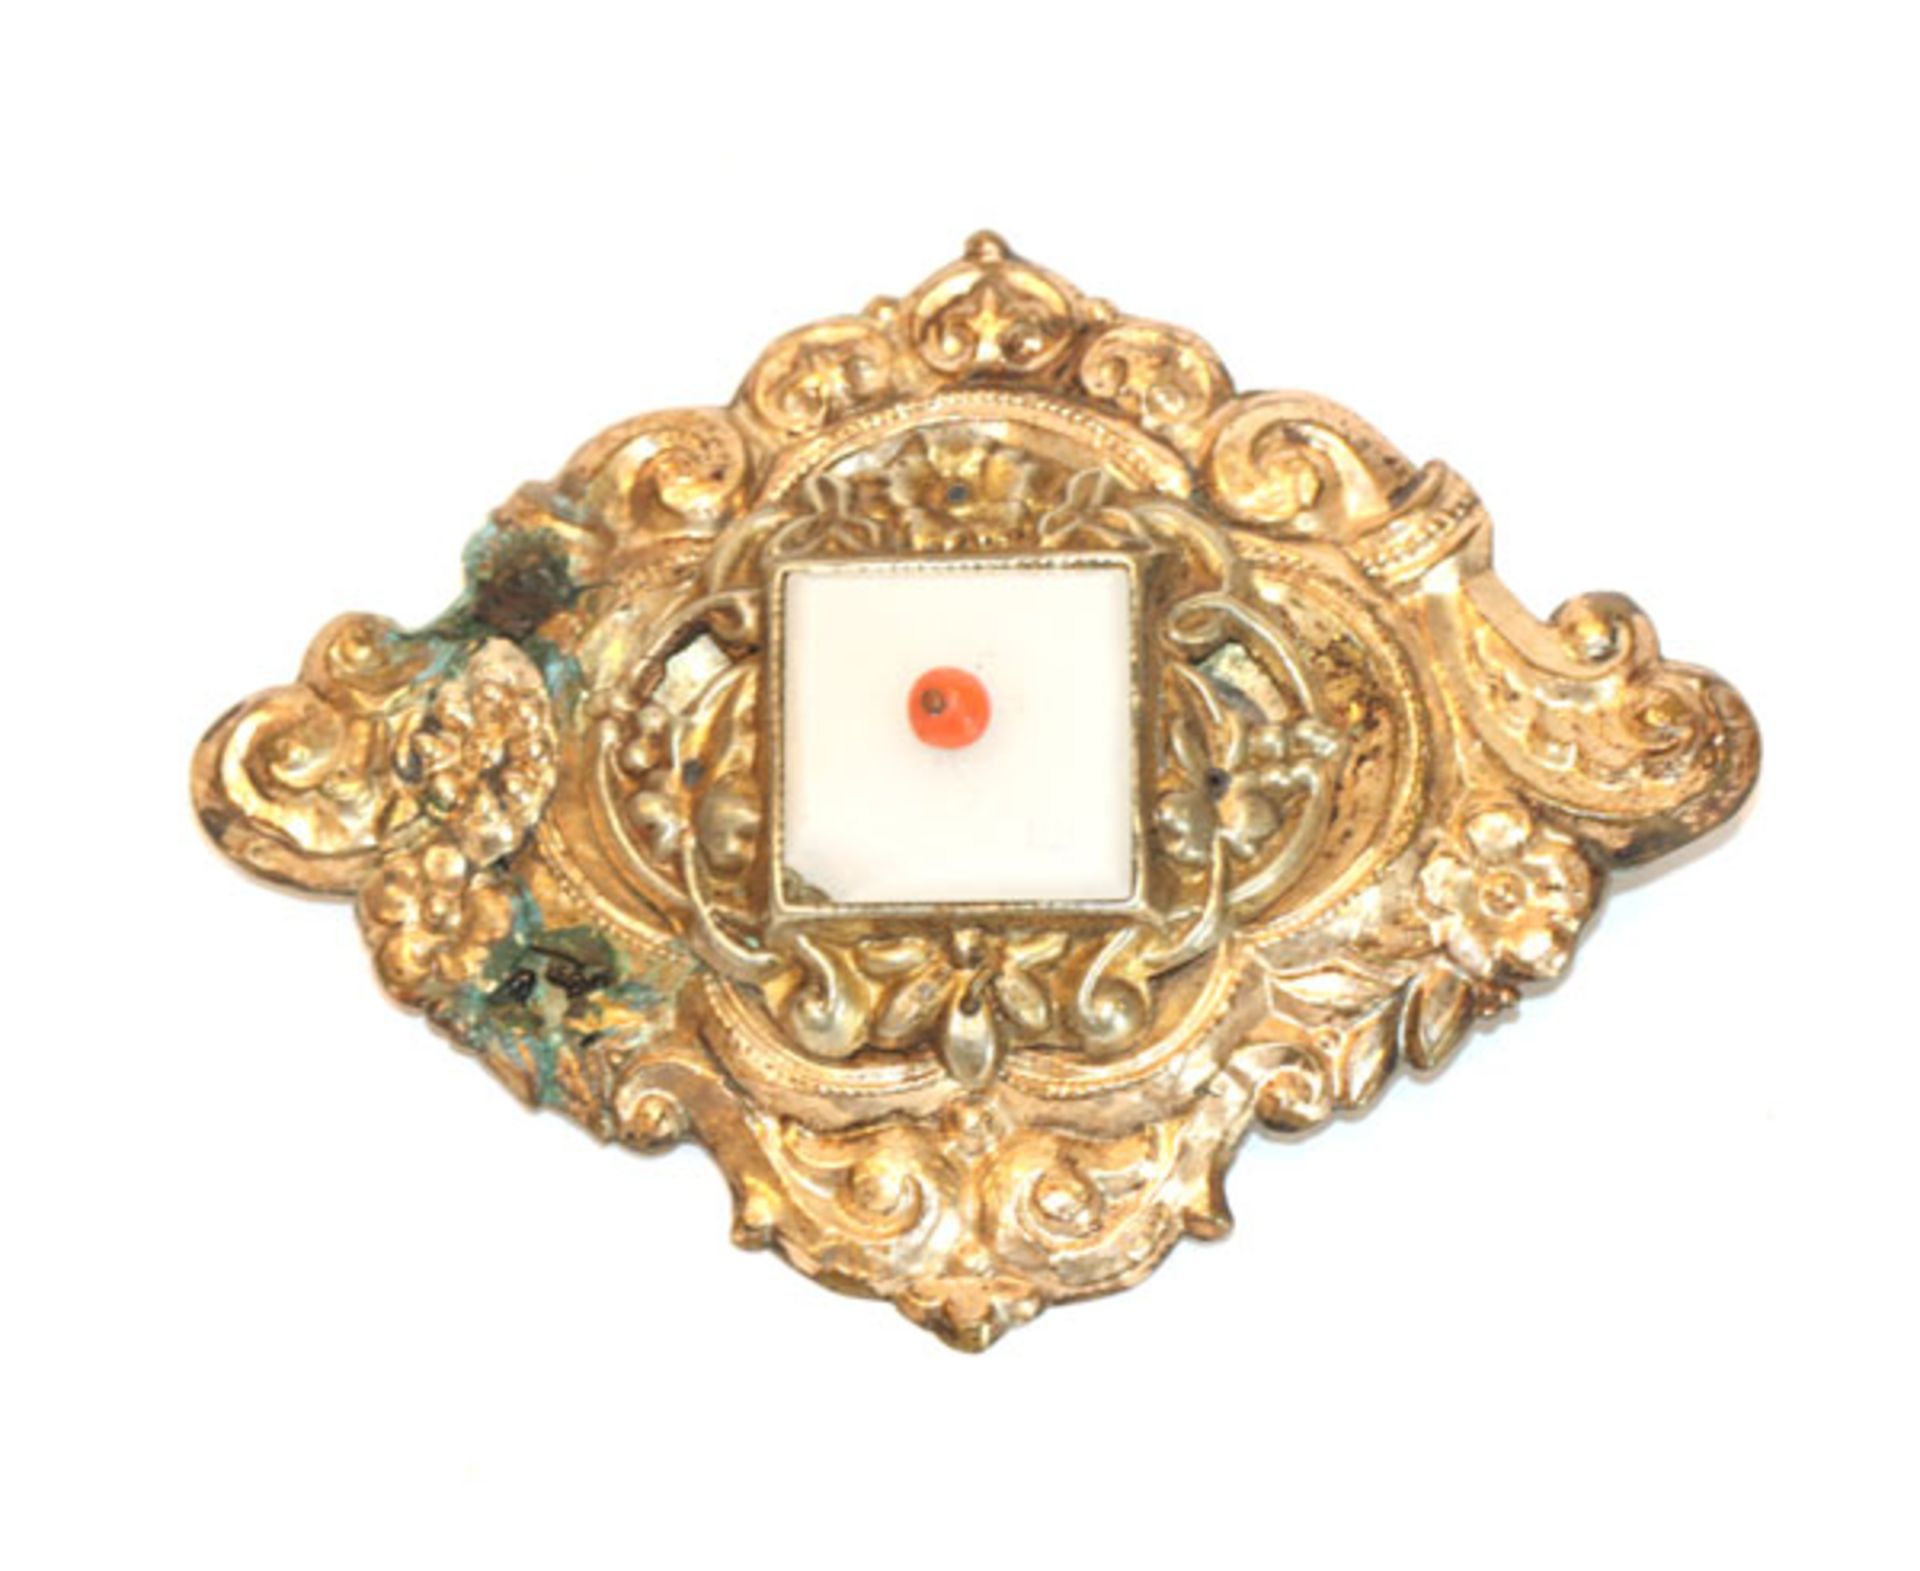 Silber/vergoldete Trachtenbrosche, 19. Jahrhundert, teils beschädigt und bestossen, 5 cm x 6,5 cm